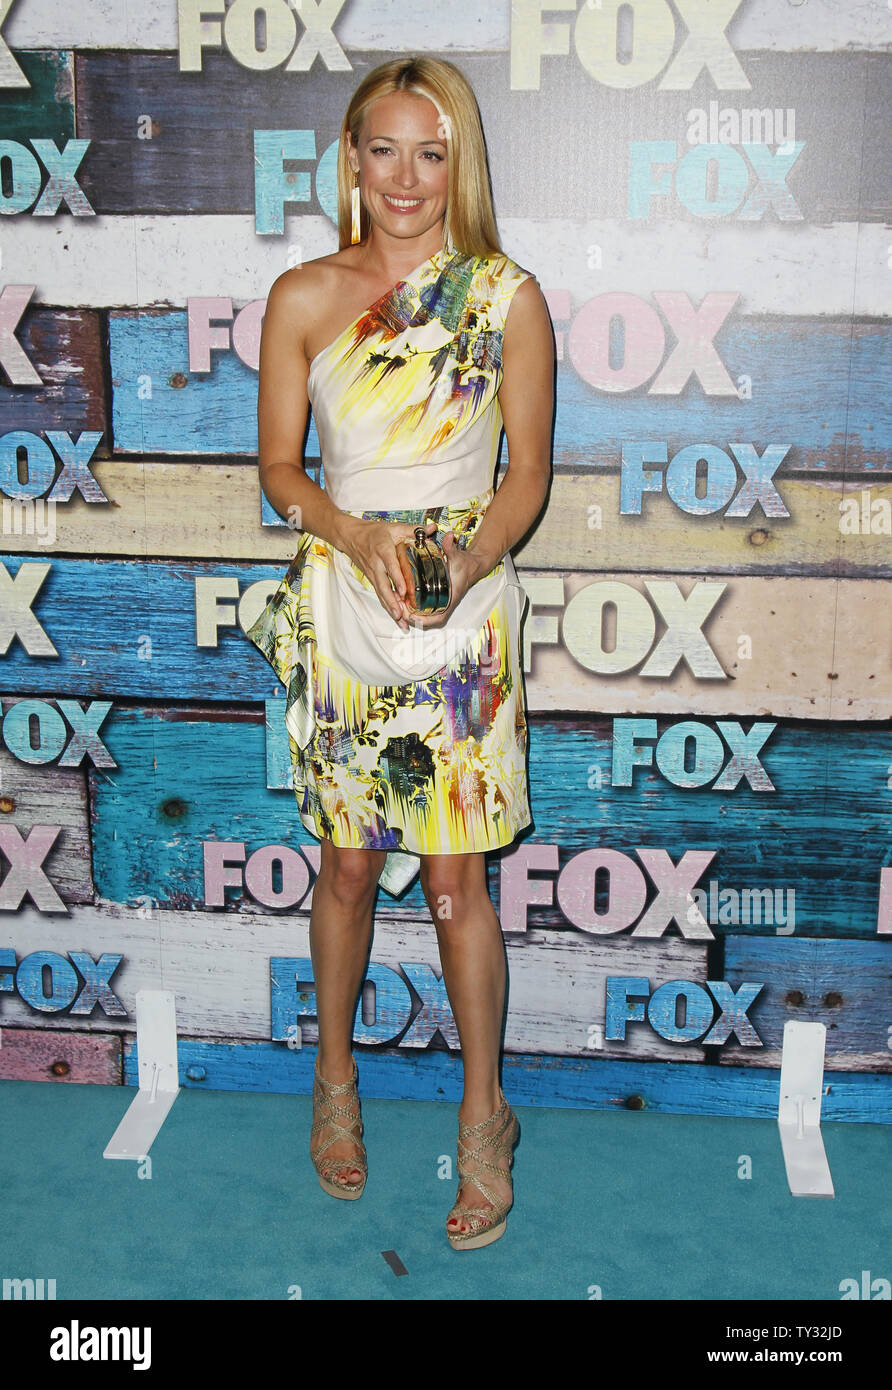 L'attrice Cat Deeley assiste la Fox All-Star Party a Los Angeles il 23 luglio 2012. UPI/Danny Moloshok Foto Stock